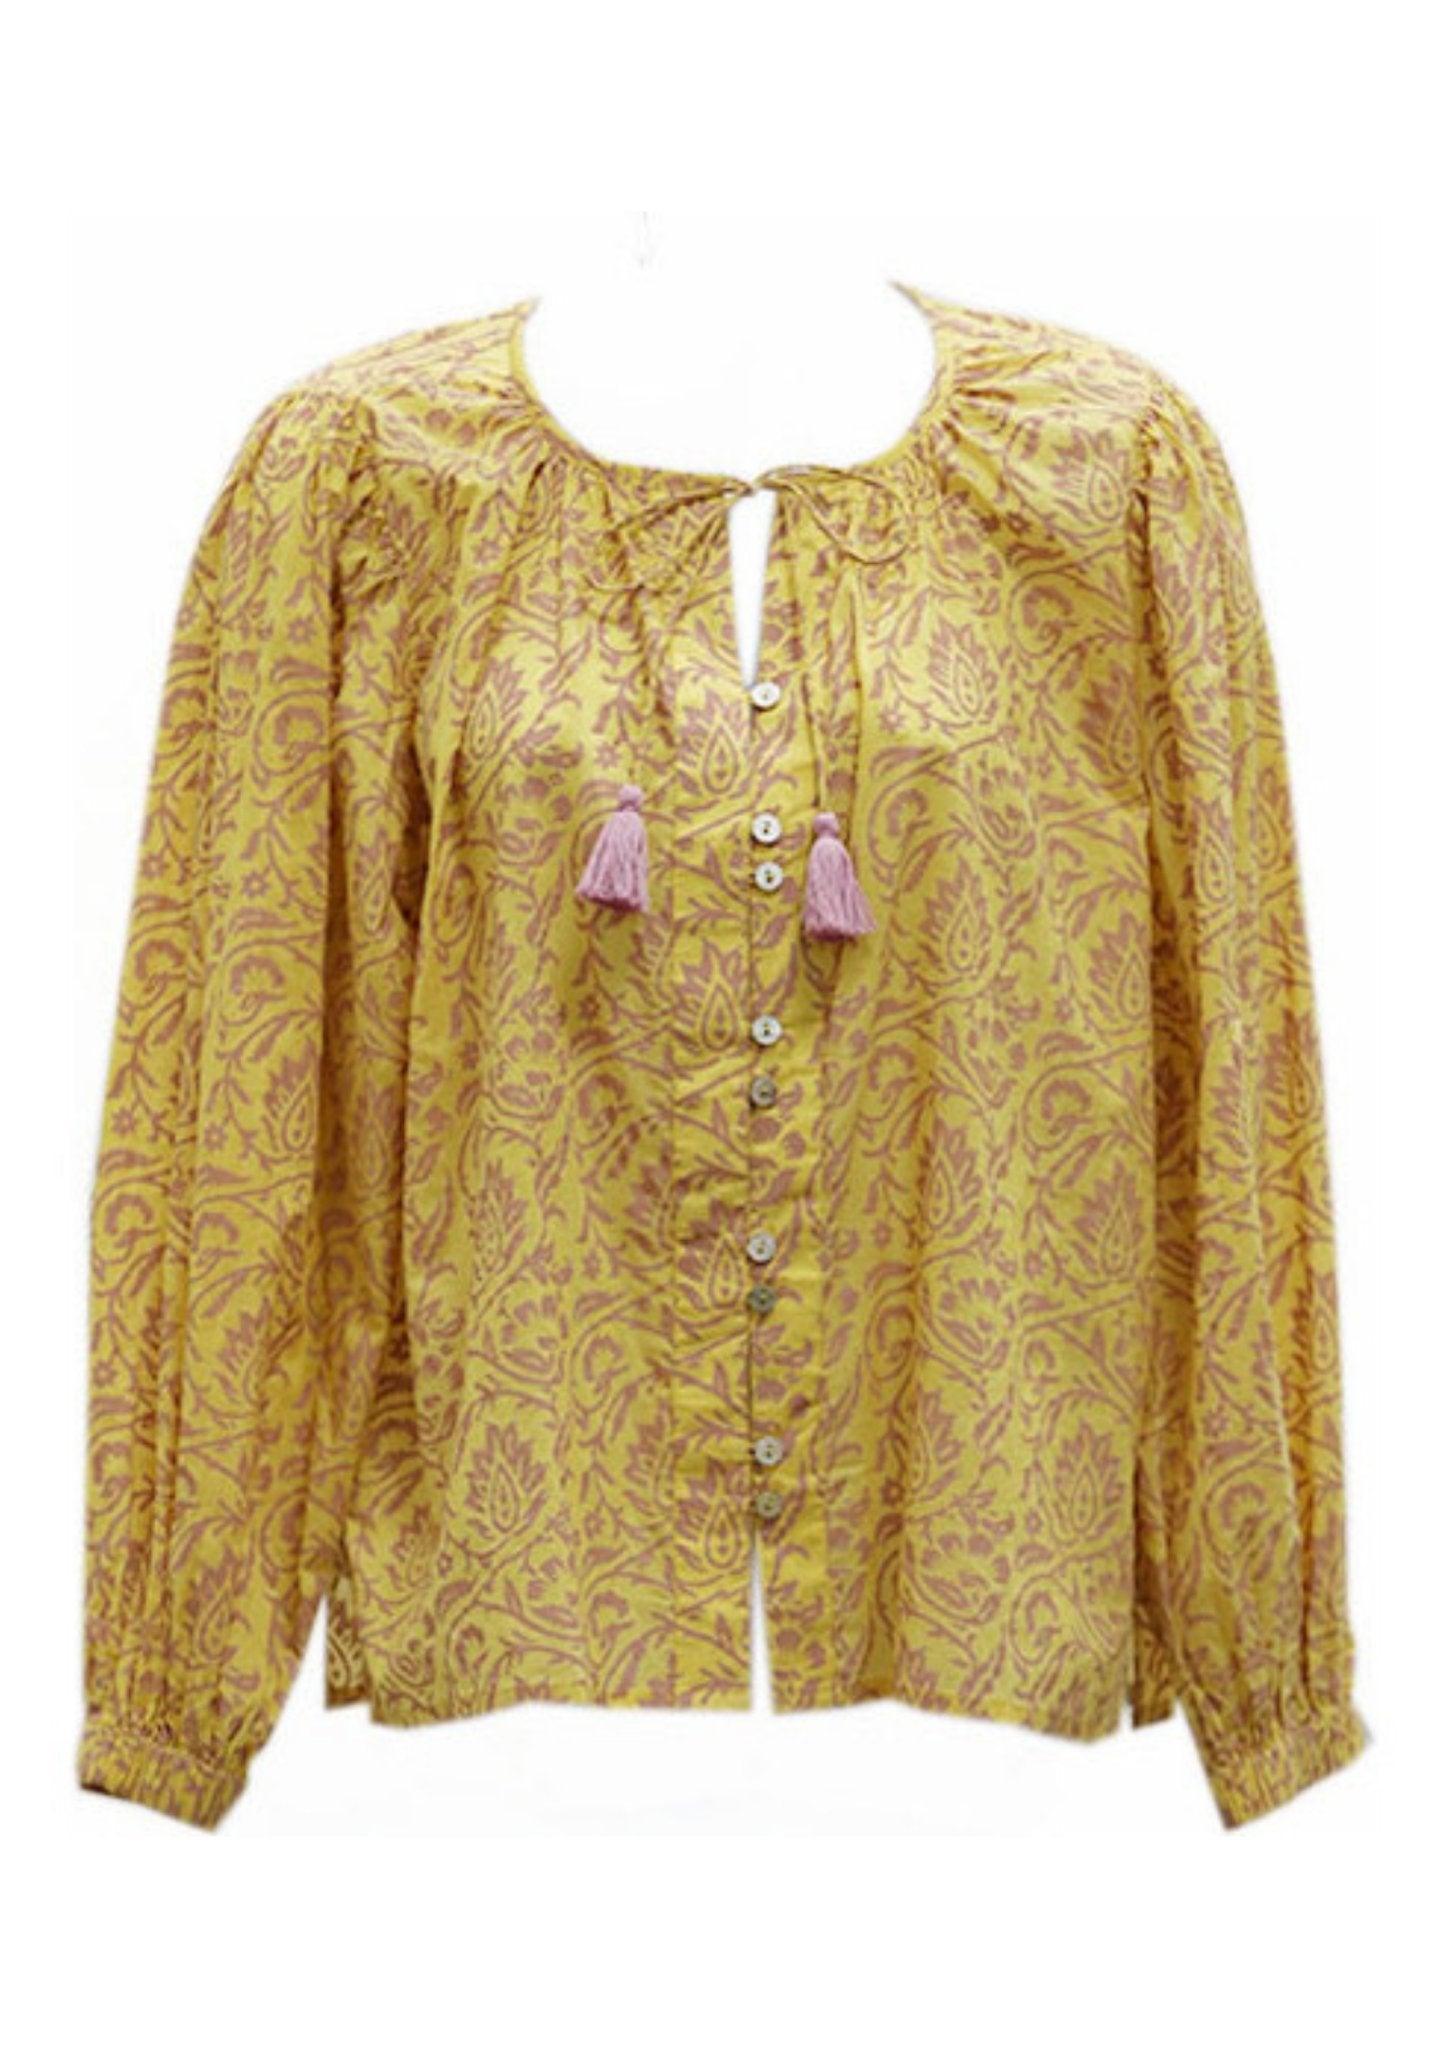 georgia-kate-cleobella-scarlett-blouse-tops-blouse